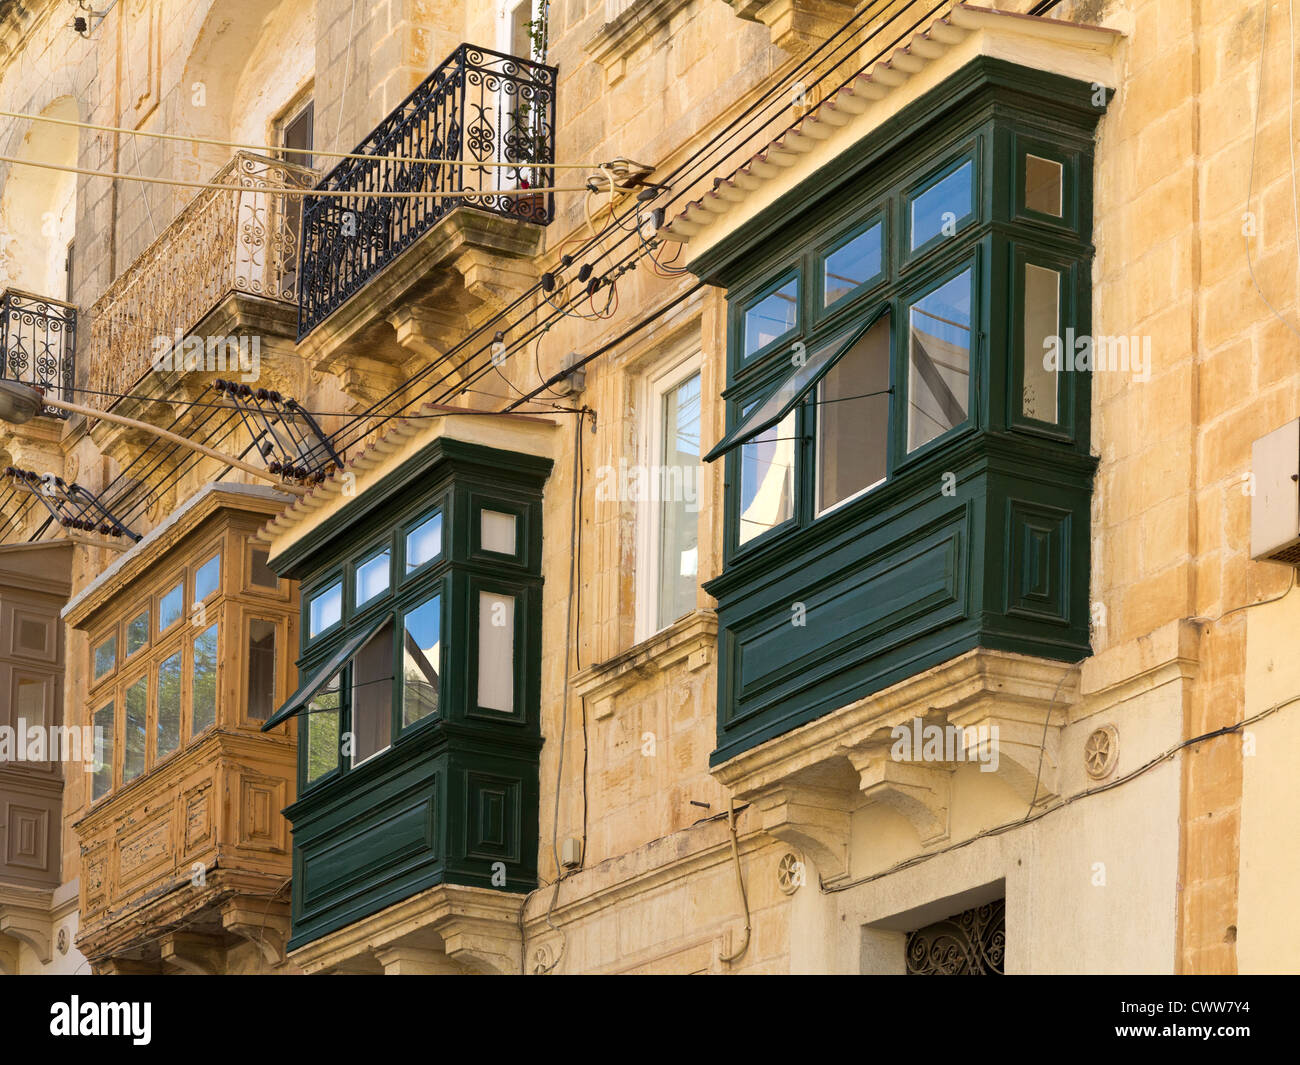 Vu de l'architecture maltaise sur les rues de l'île de Malte, mer Méditerranée Banque D'Images